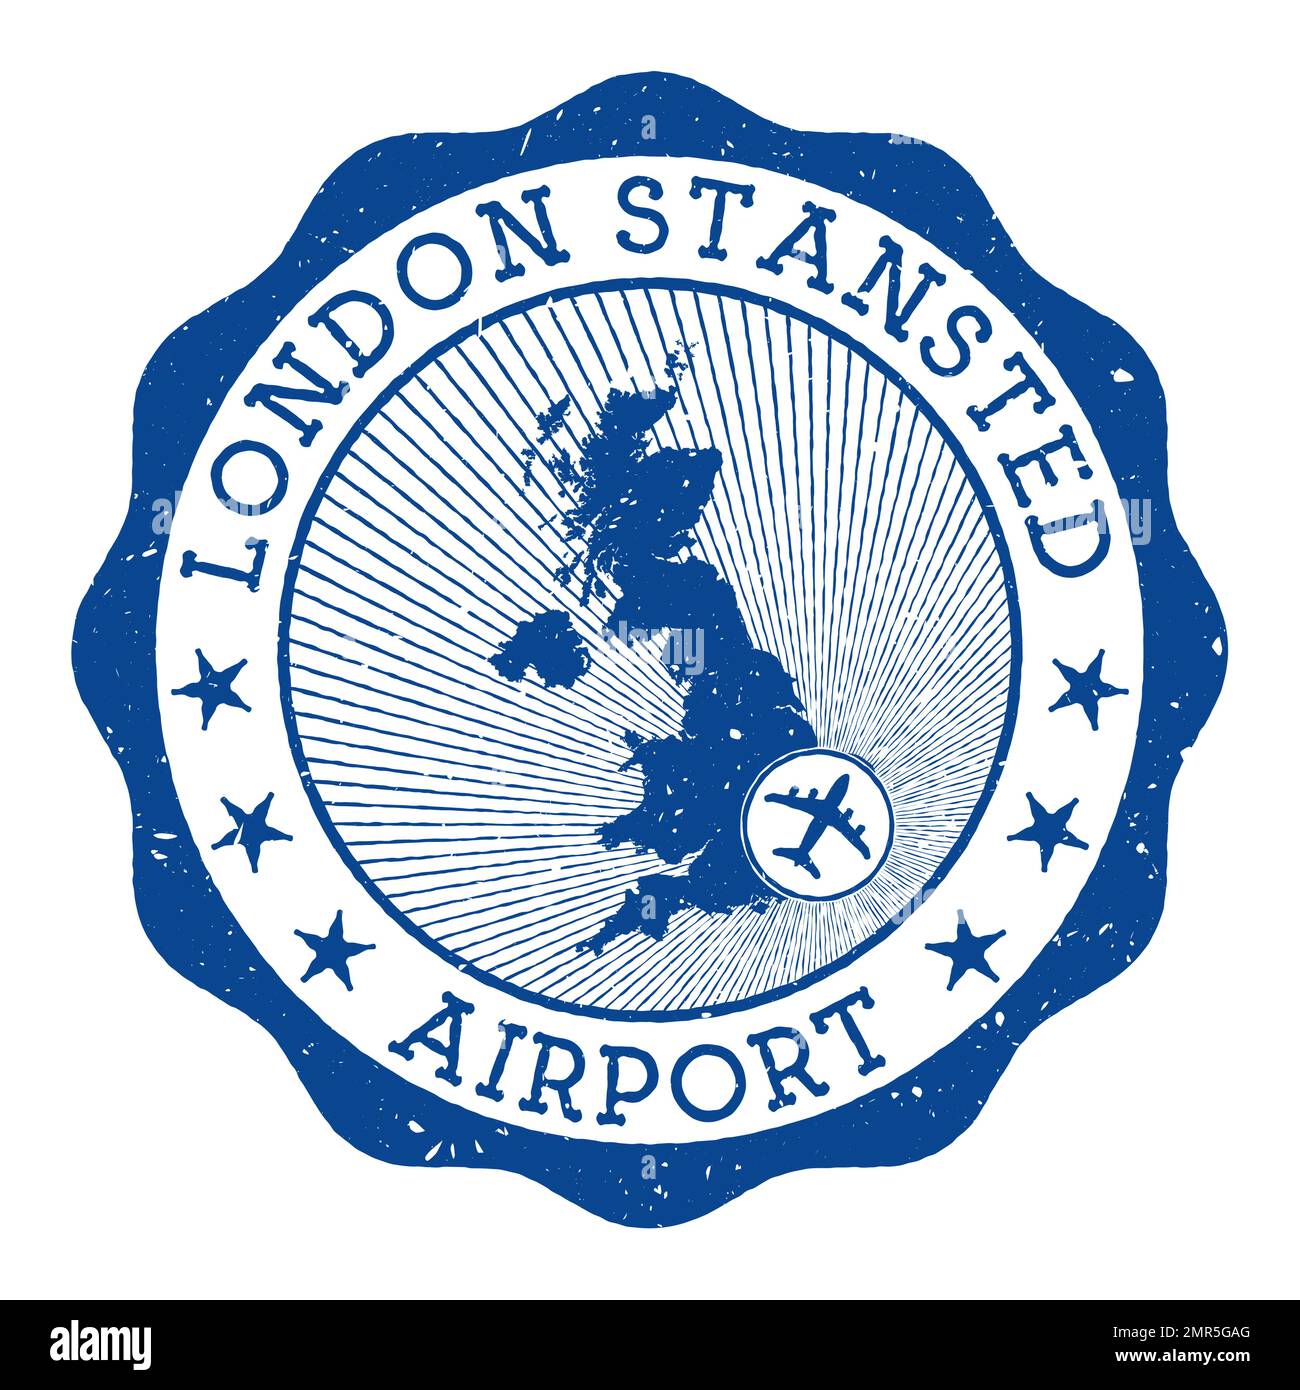 Timbre de l'aéroport de Londres Stansted. Logo rond de l'aéroport de Londres avec emplacement sur la carte du Royaume-Uni marquée par avion. Illustration vectorielle. Illustration de Vecteur